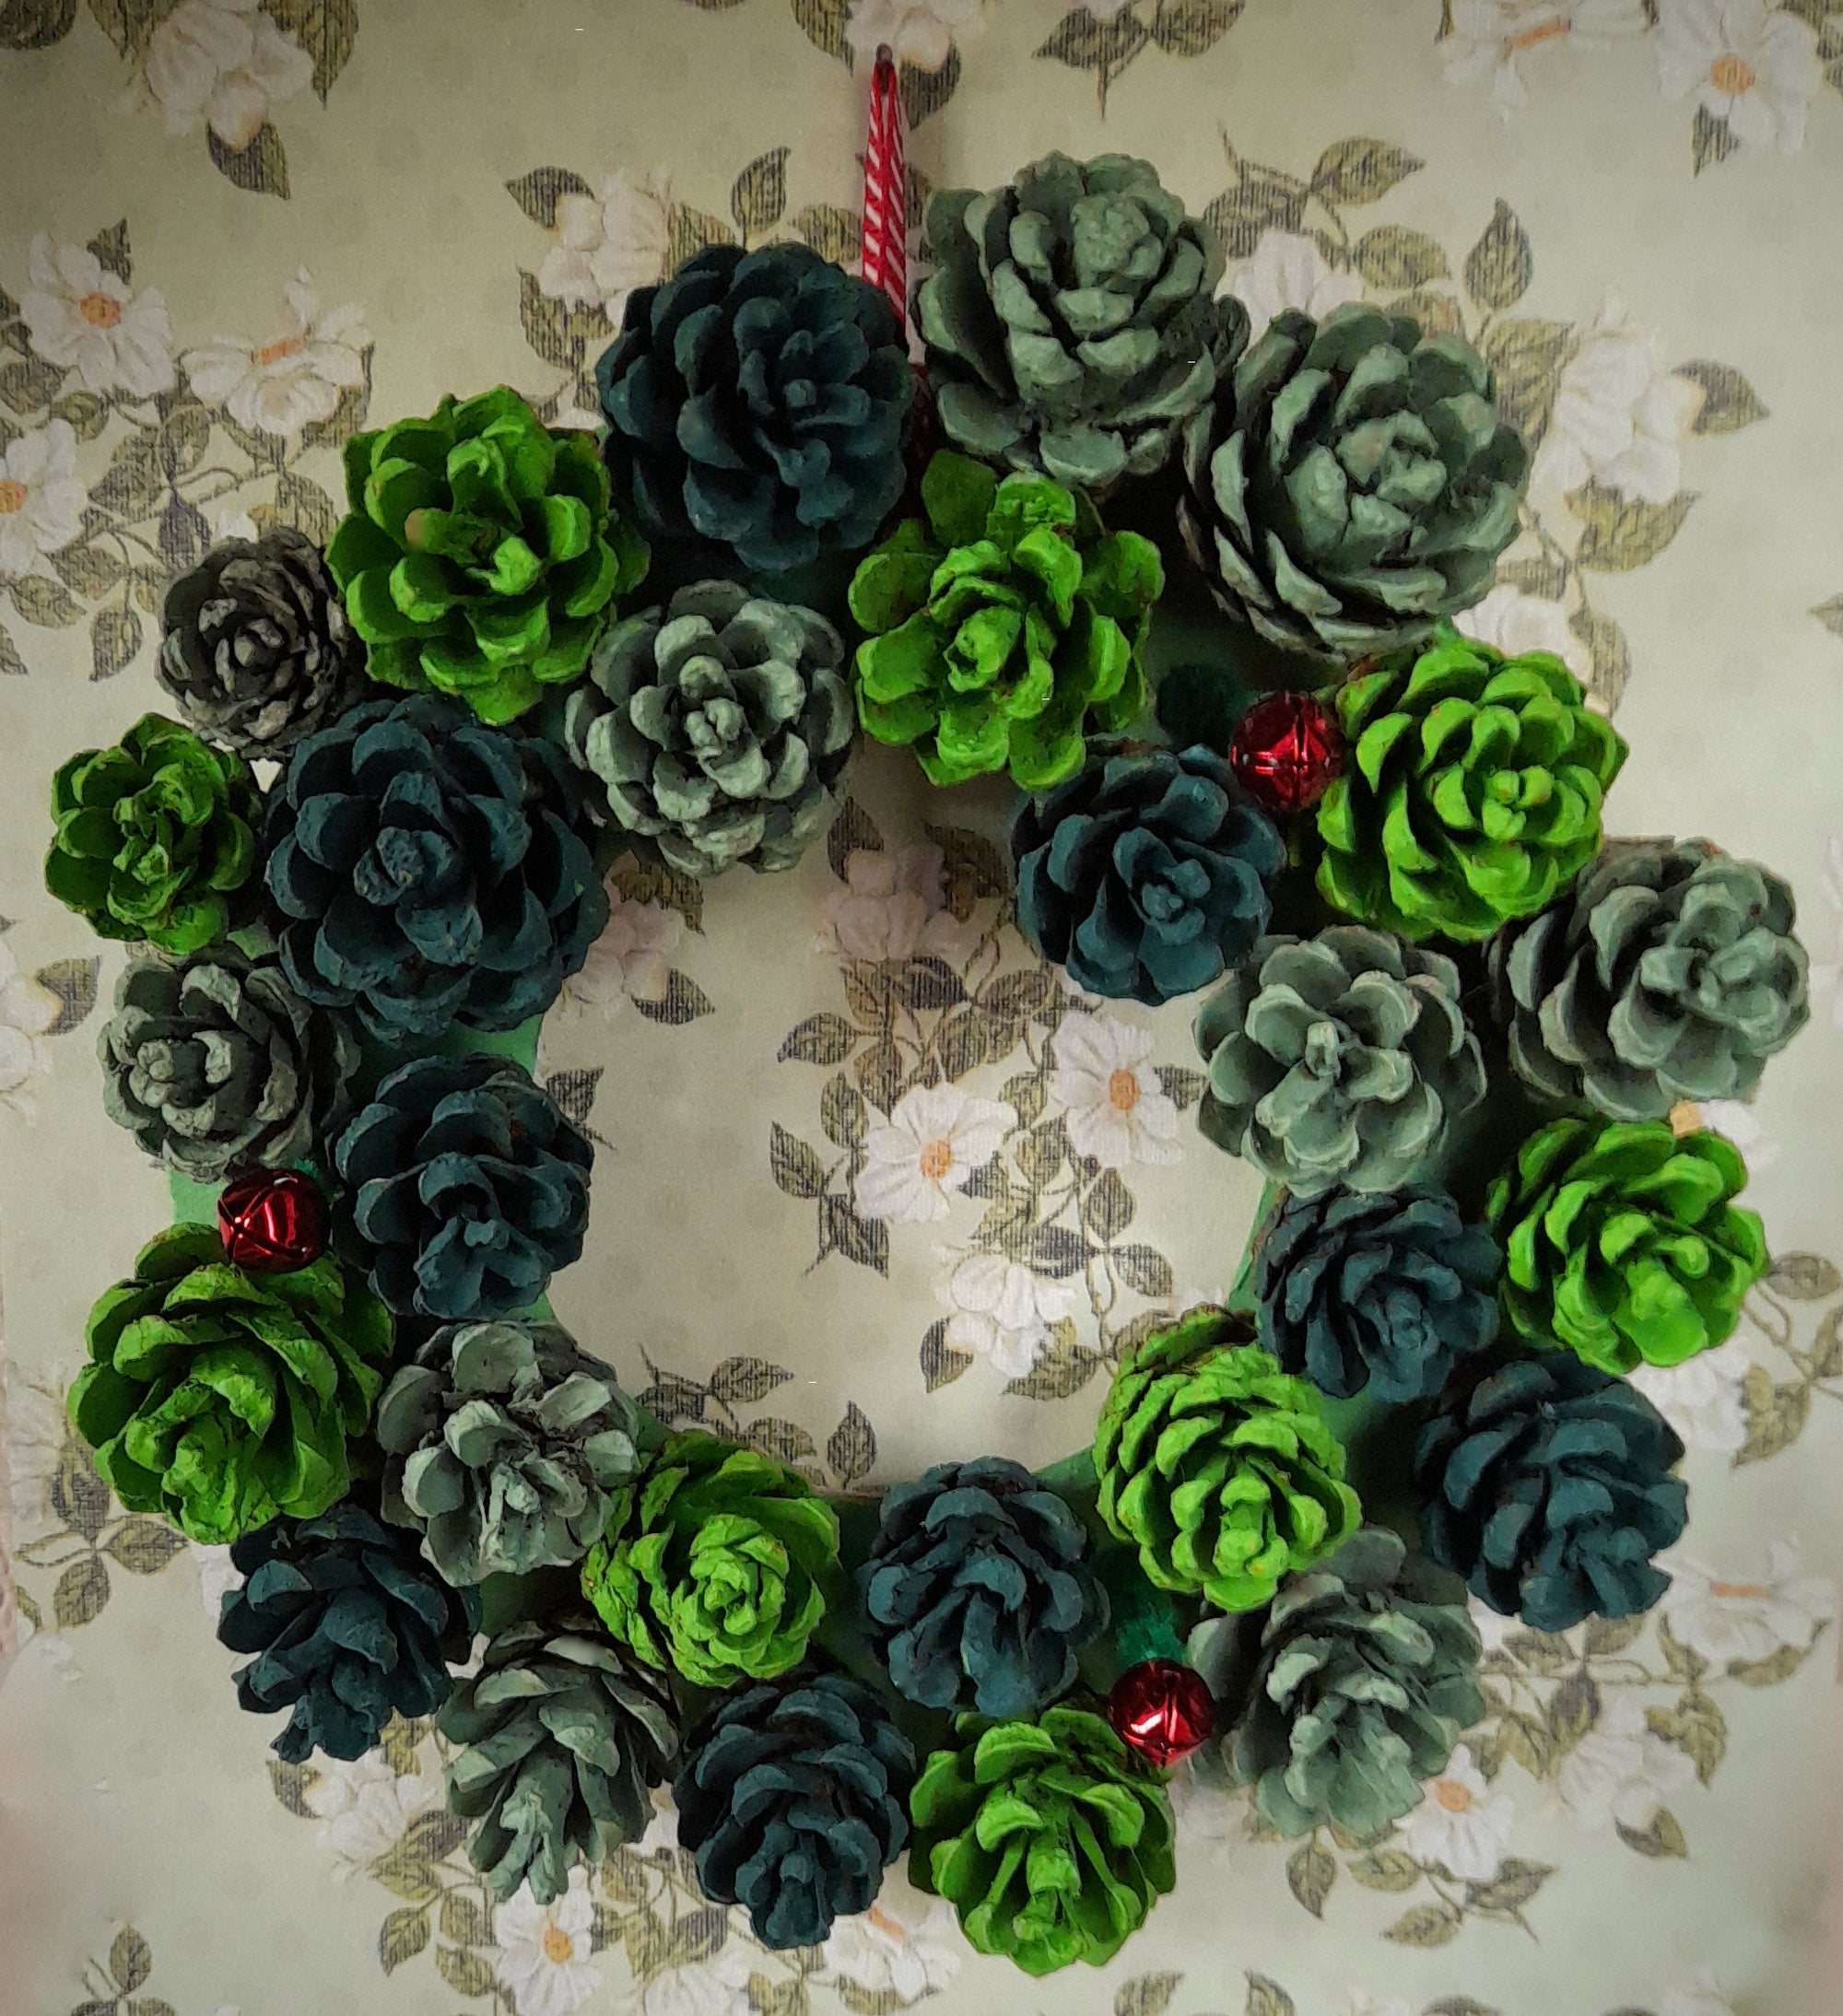 Make Your Own: Winter Wonderland Wreath